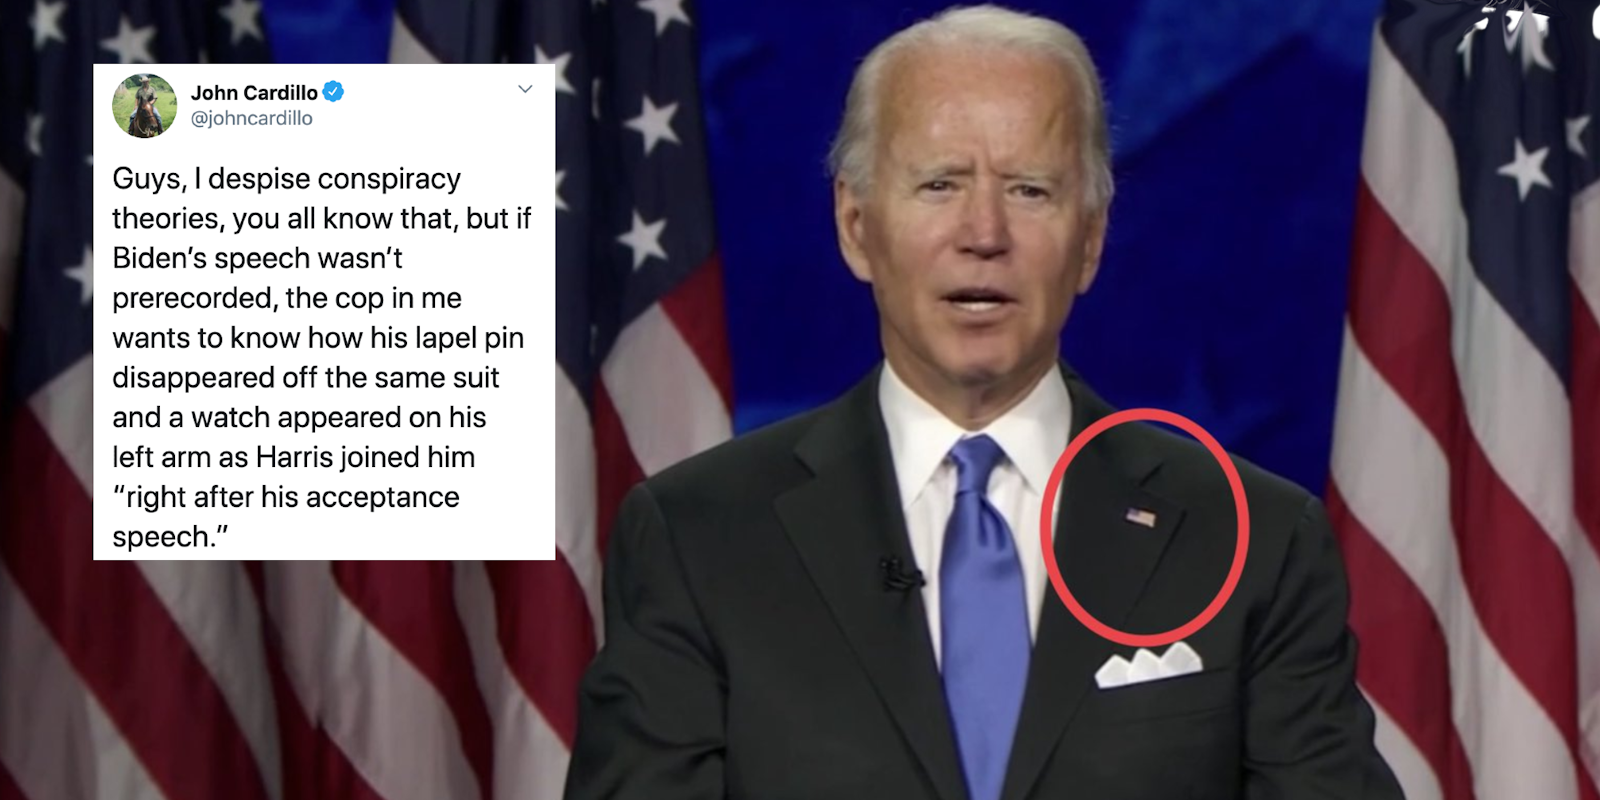 A tweet next to Joe Biden about a conspiracy